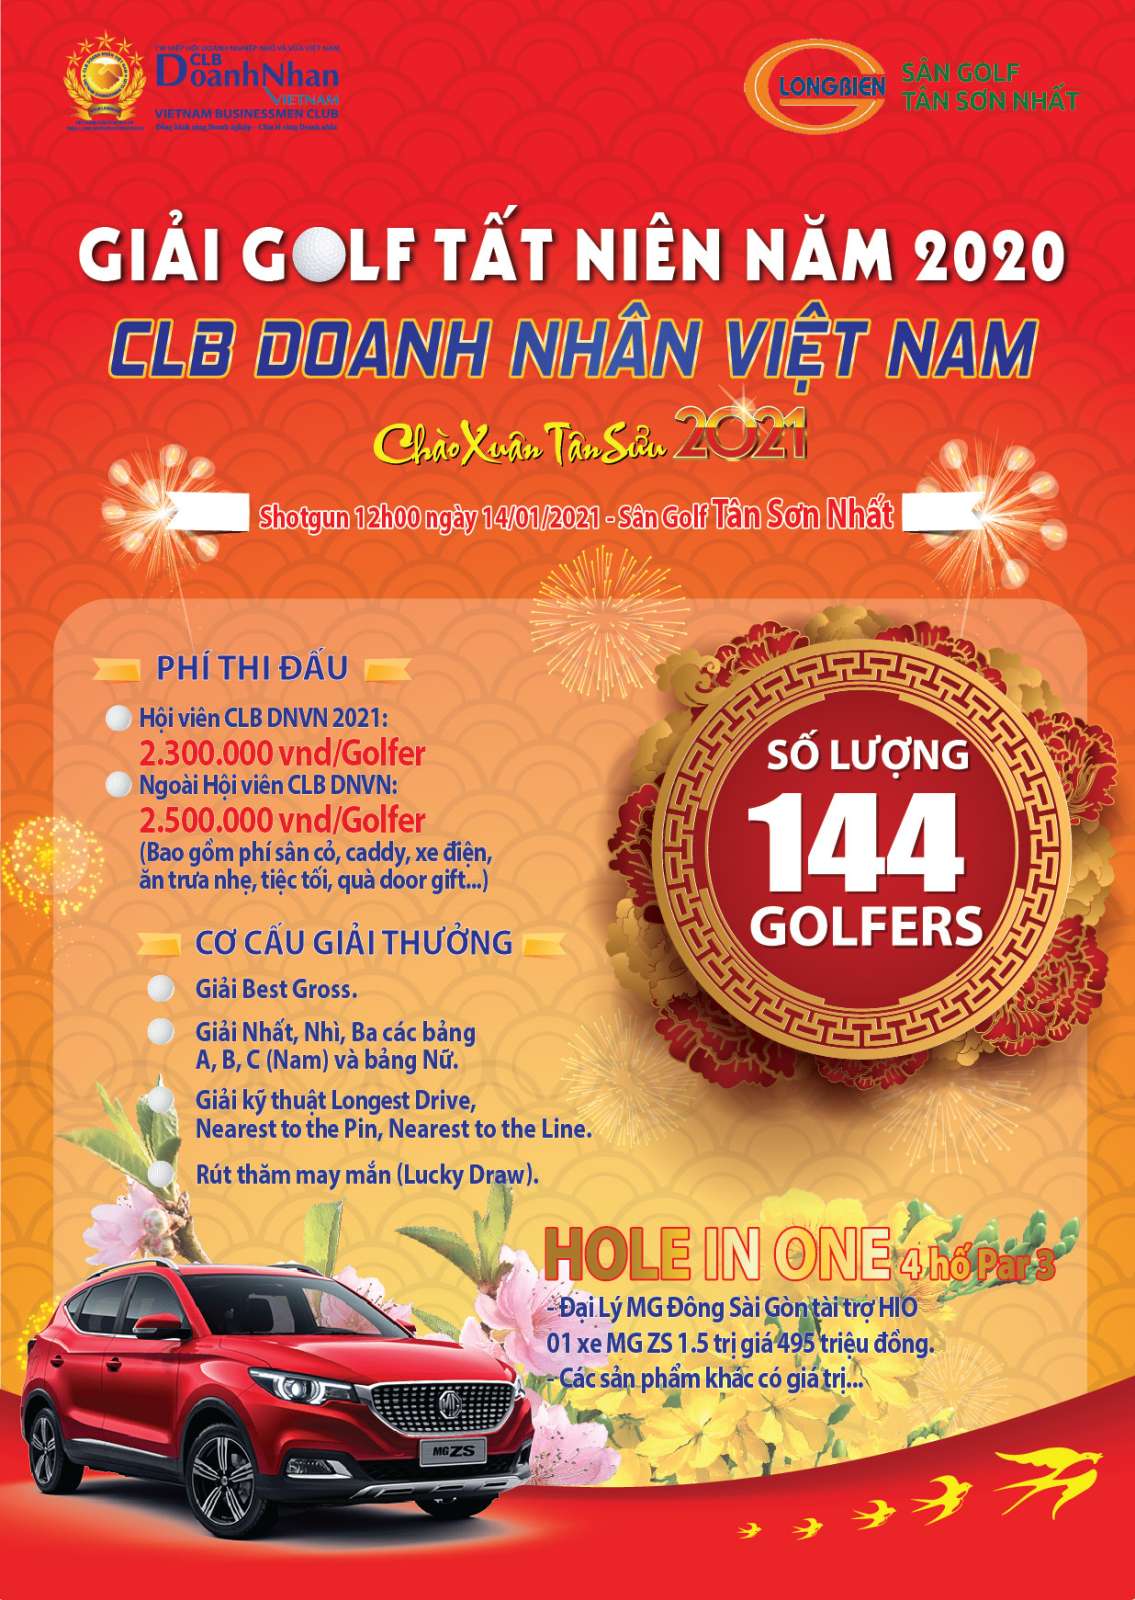 Giải golf Tất niên năm 2020 CLB Doanh nhân Việt Nam "chật kín" người chơi sau gần 5 tiếng mở đăng ký